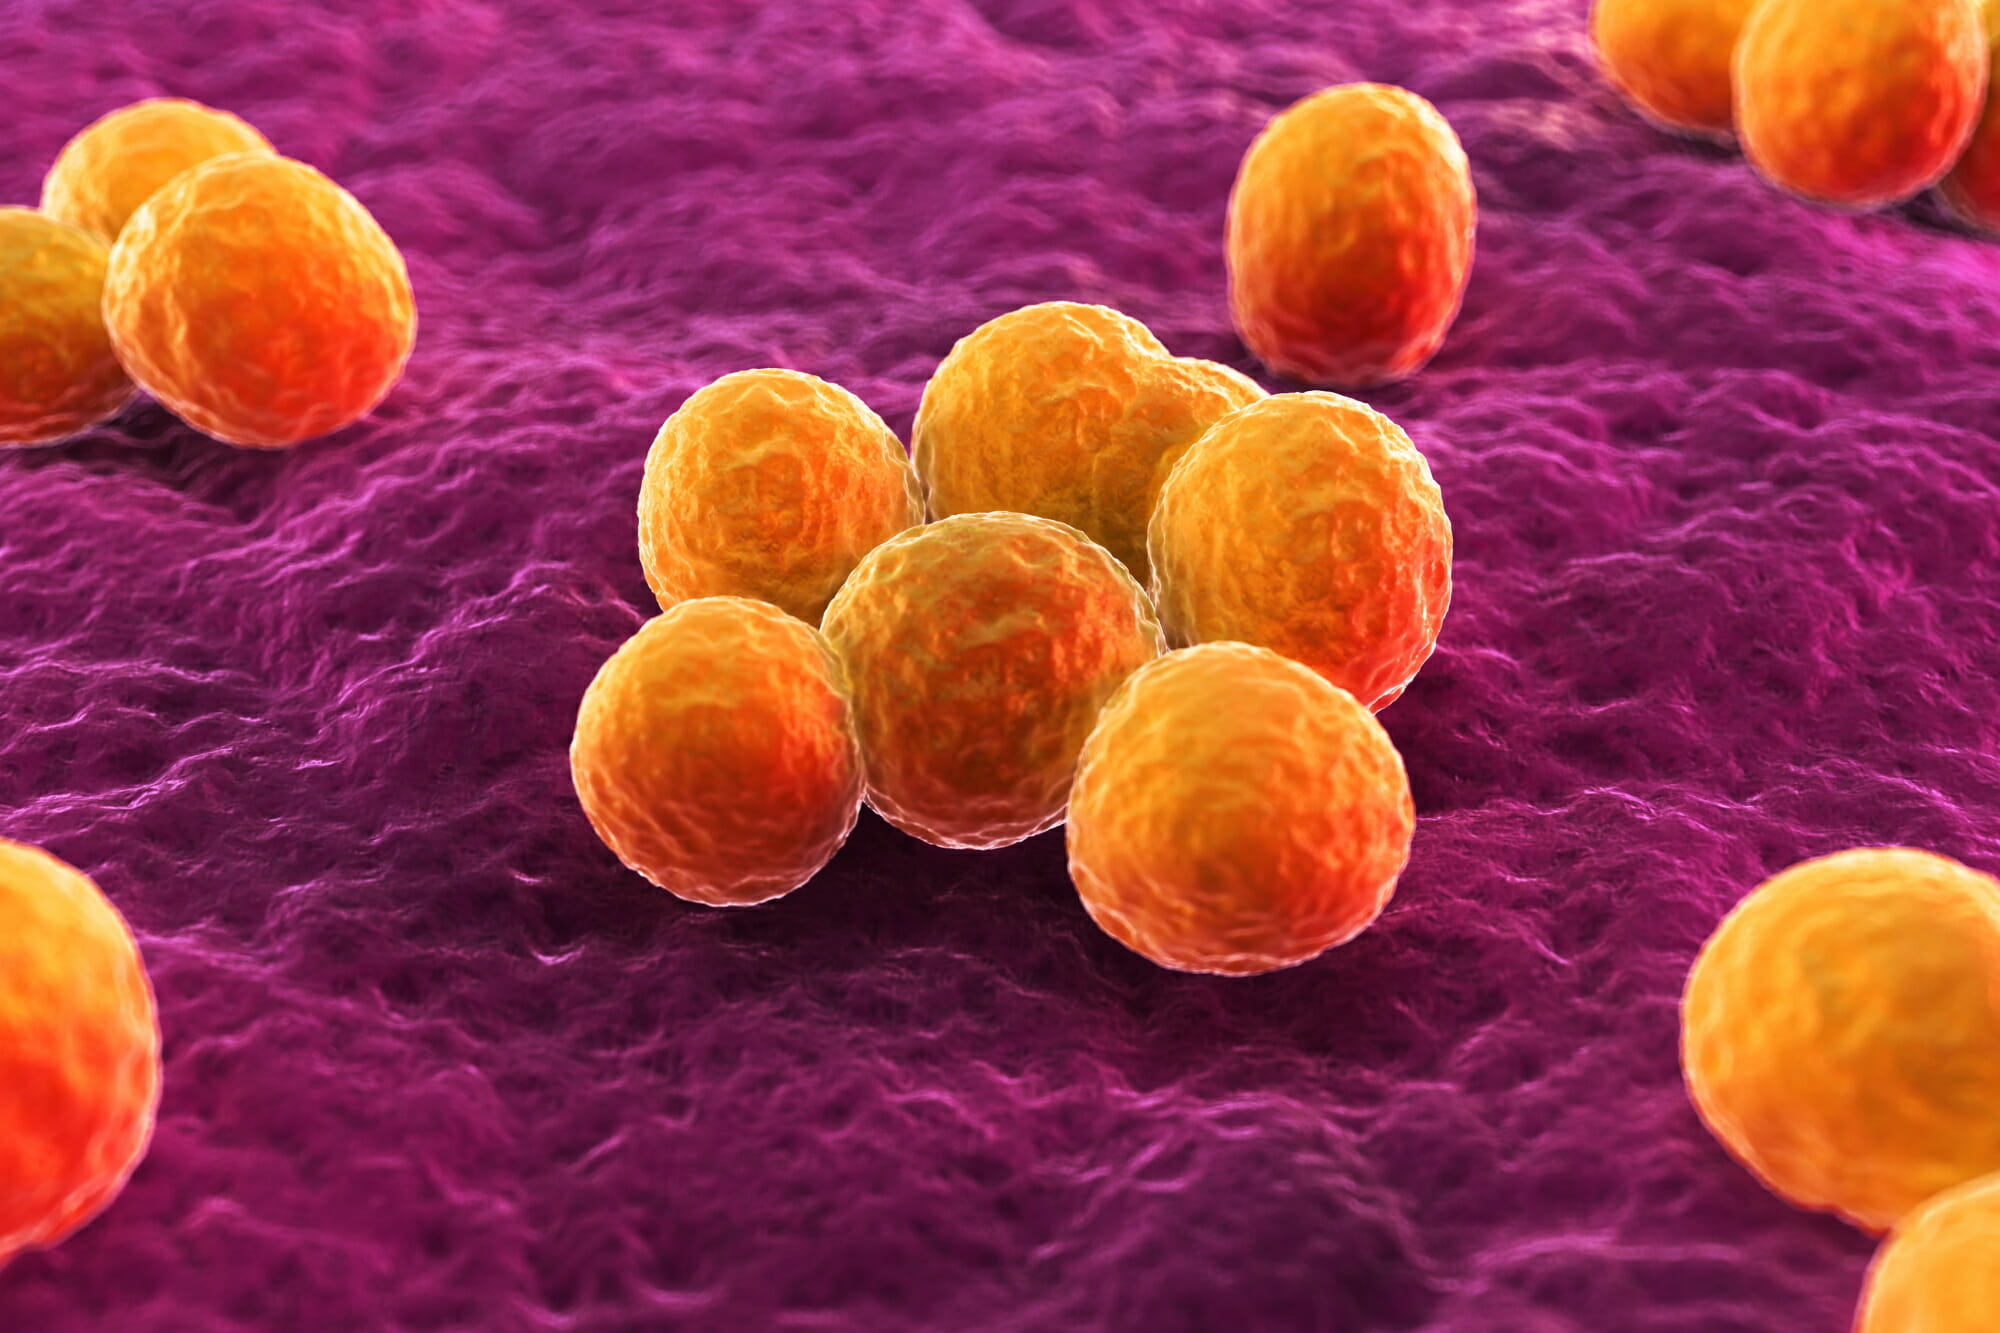 严重细菌感染的IV抗生素Ceftobiprole在美FDA接受审查_香港济民药业